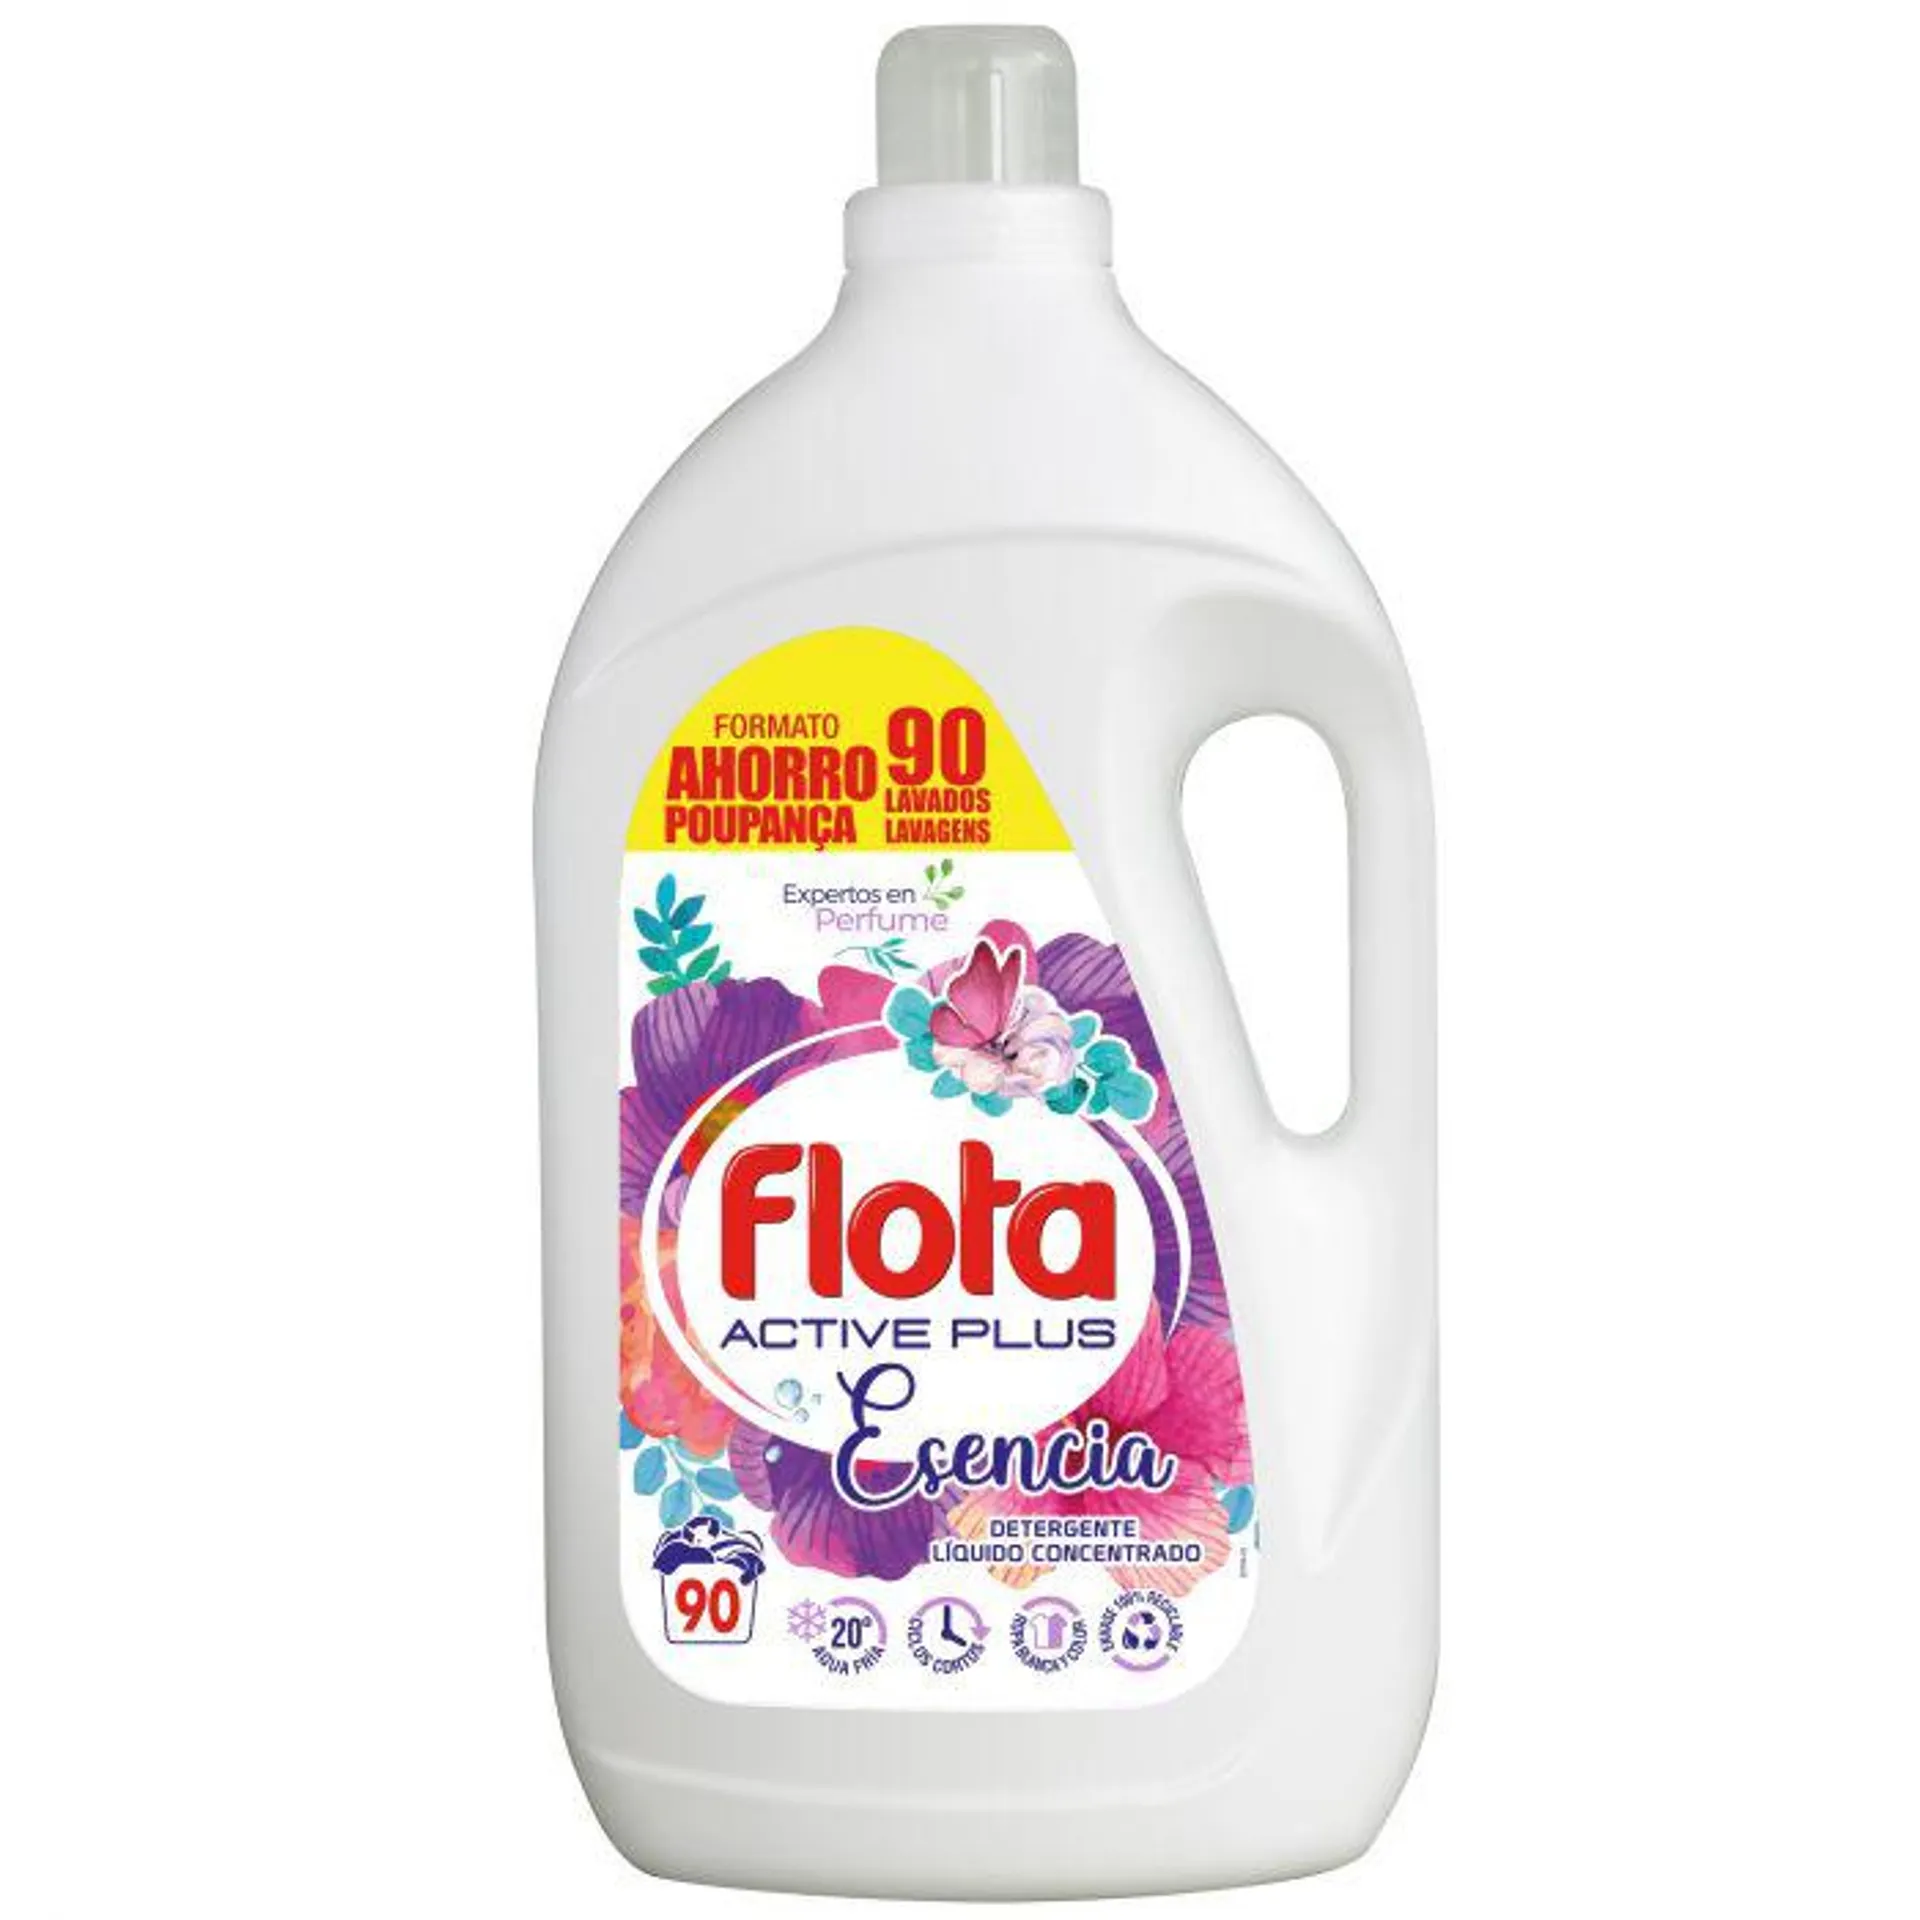 Detergente líquido esencia flota 90 dosis 4,95l